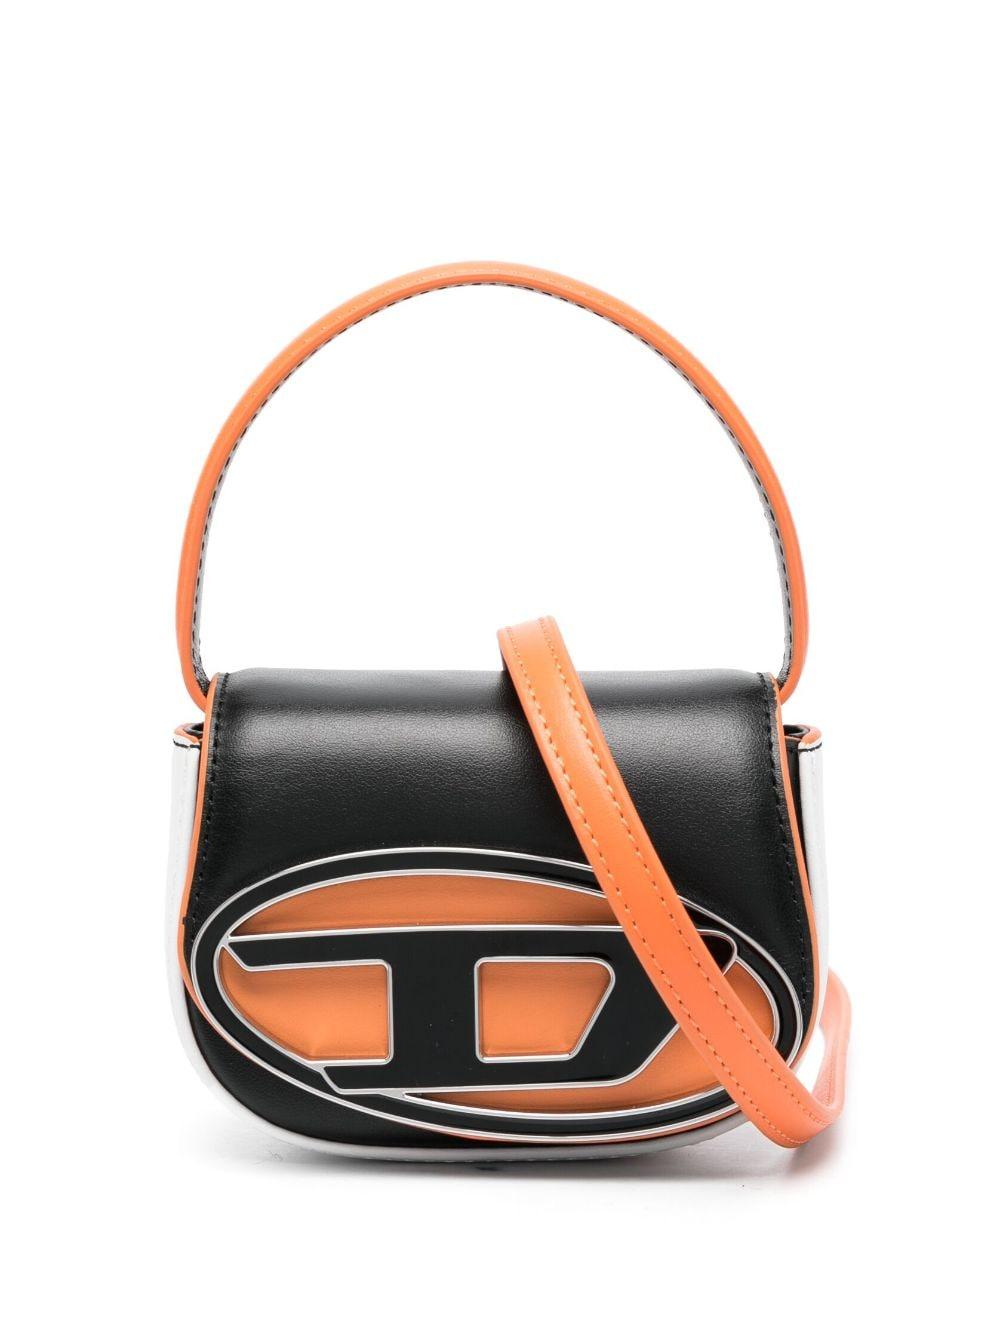 Diesel Metallic Leather Bag Charm - Farfetch